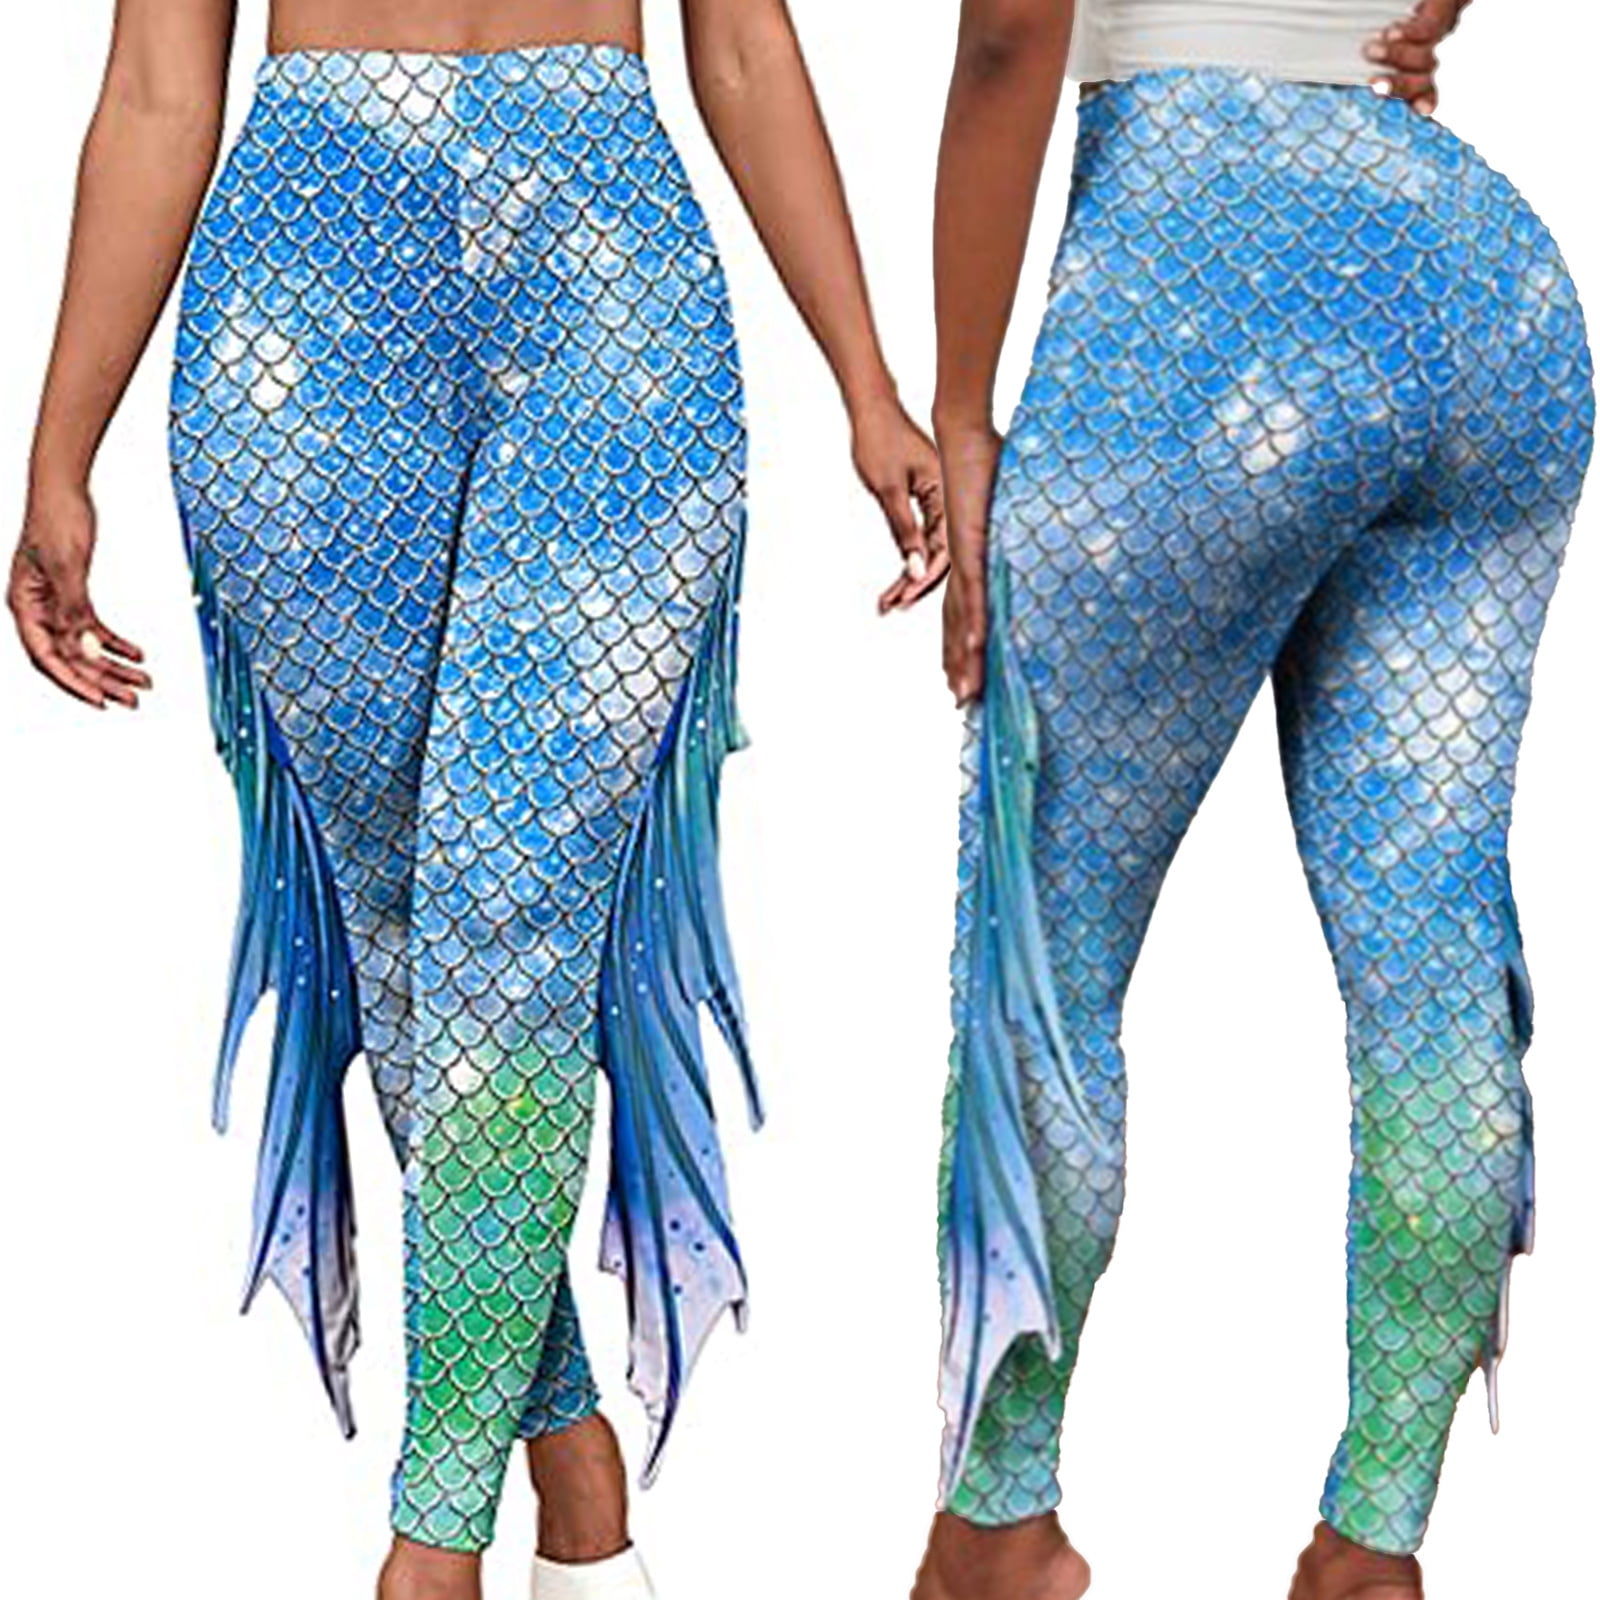 Mermaid Leggings for Women Mid Waist Navy Blue Pants w Fish Scales